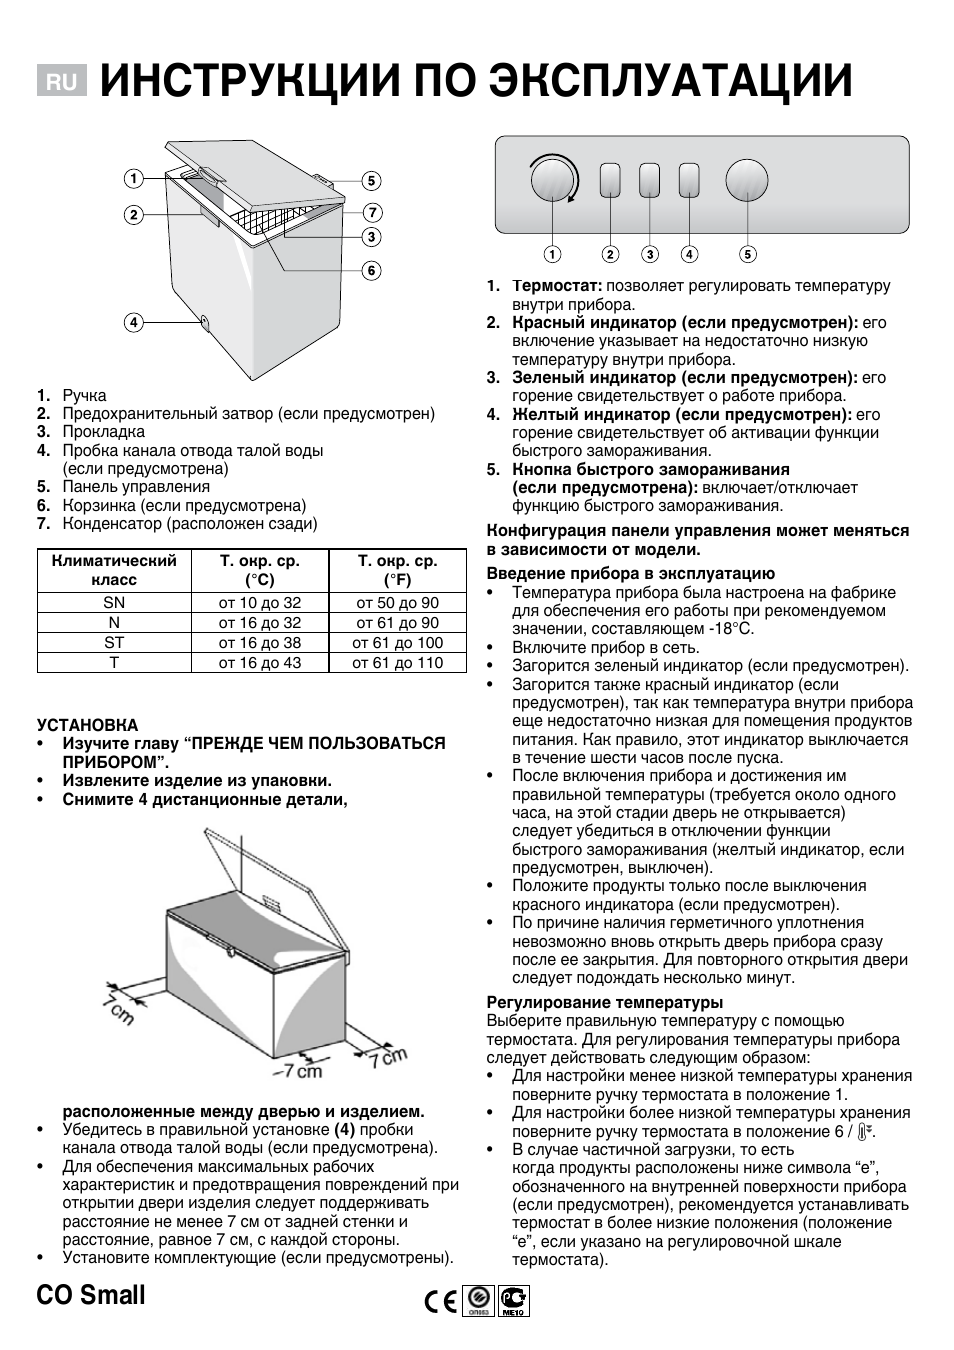 Инструкция по эксплуатации Whirlpool WH 1410 A+ | 4 страницы